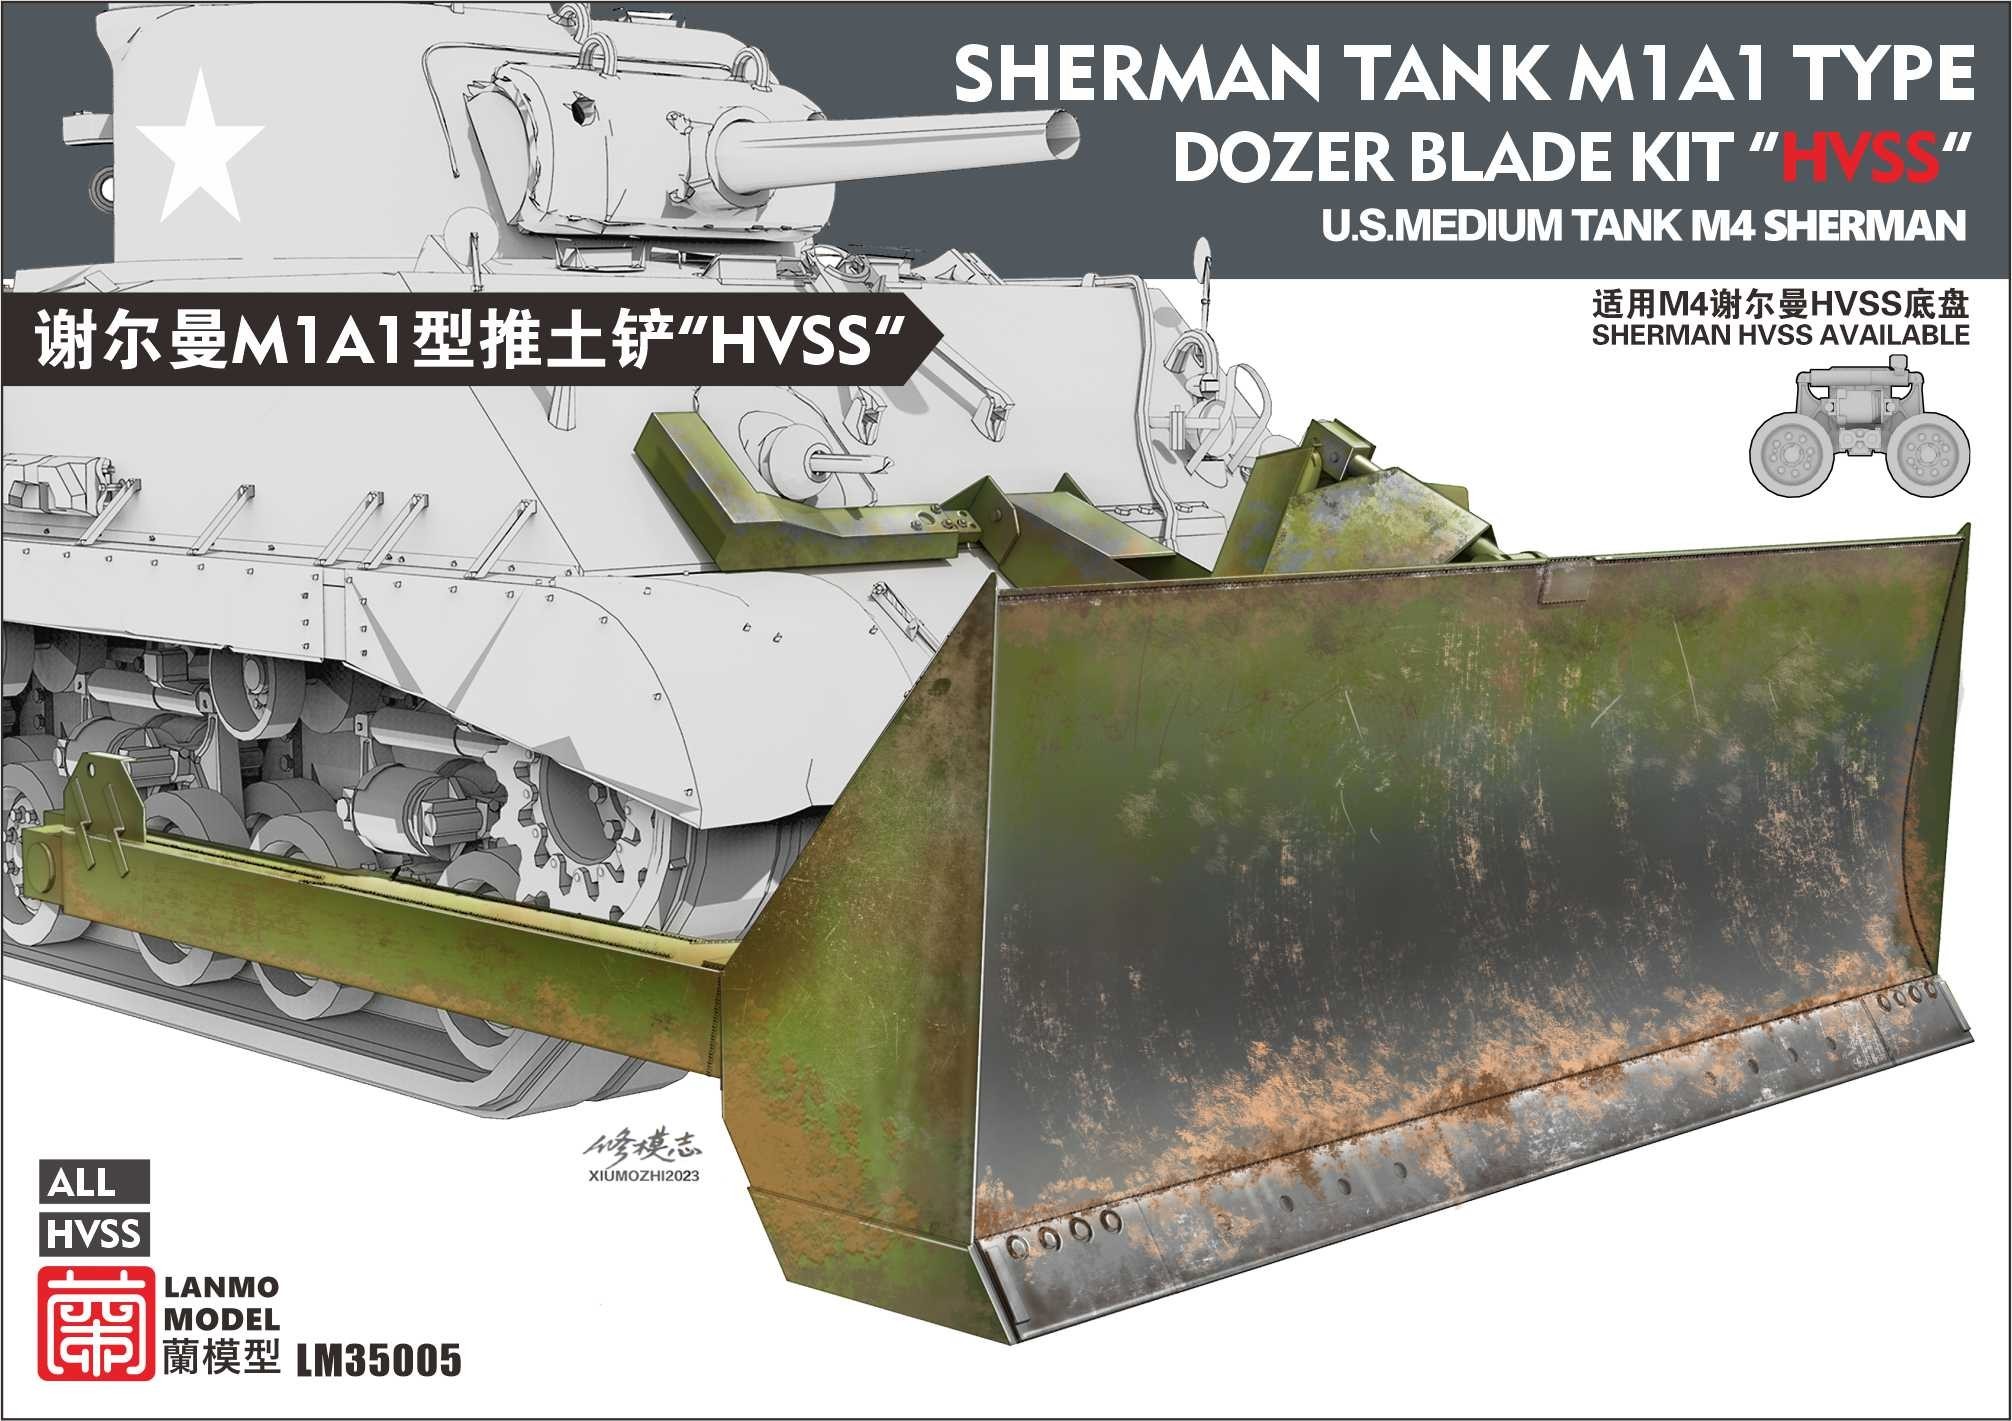 Lanmo Model（LM35005）Sherman Tank M1A1 Dozer Blade Kit